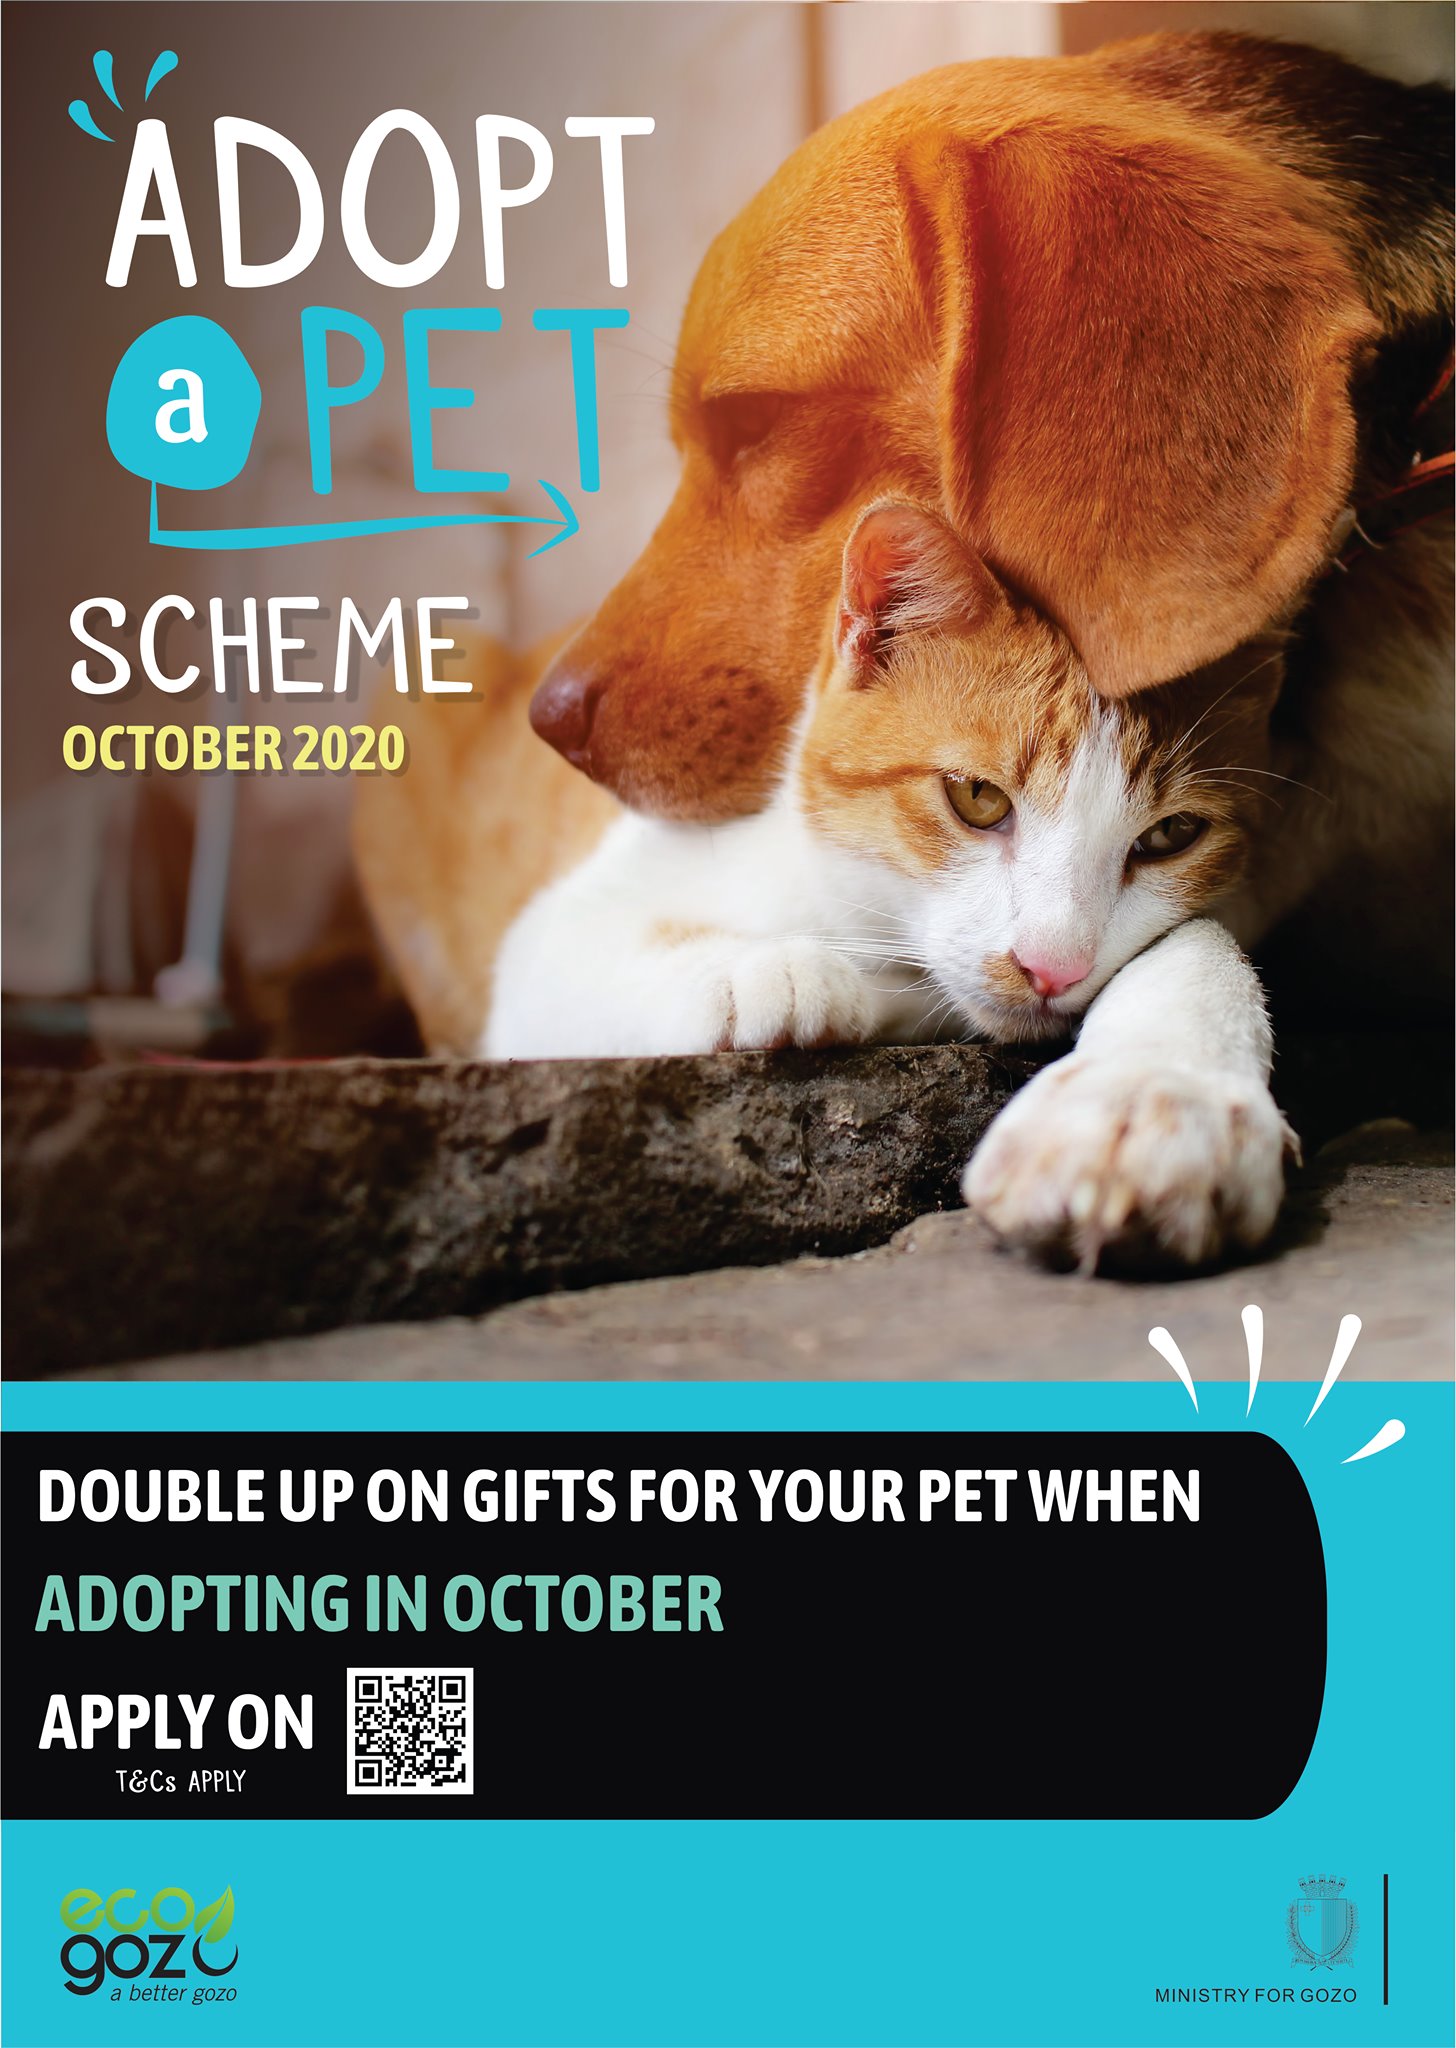 Adopt a Pet Scheme